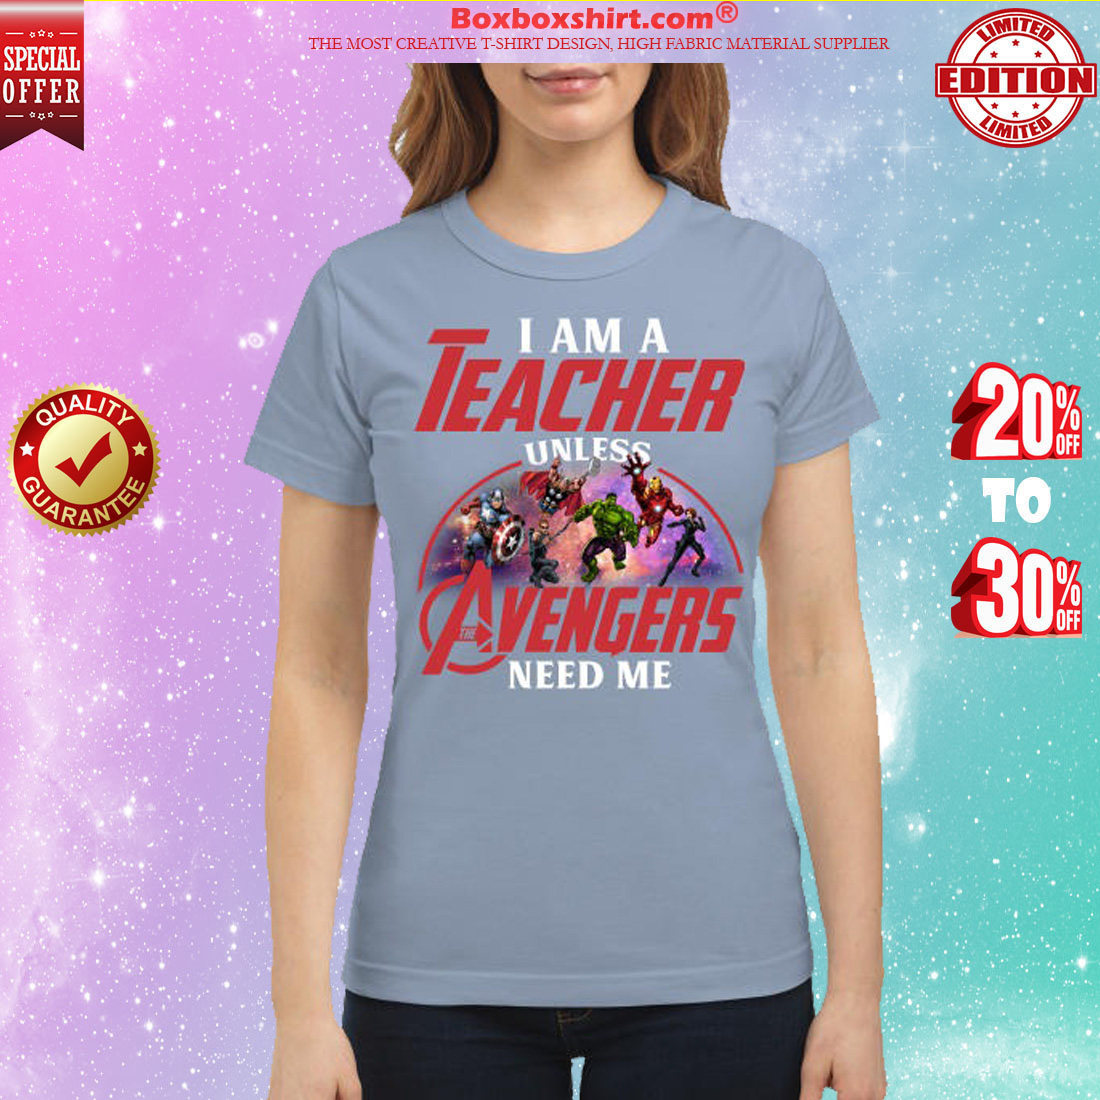 I am a teacher unless Avengers need me classic shirt